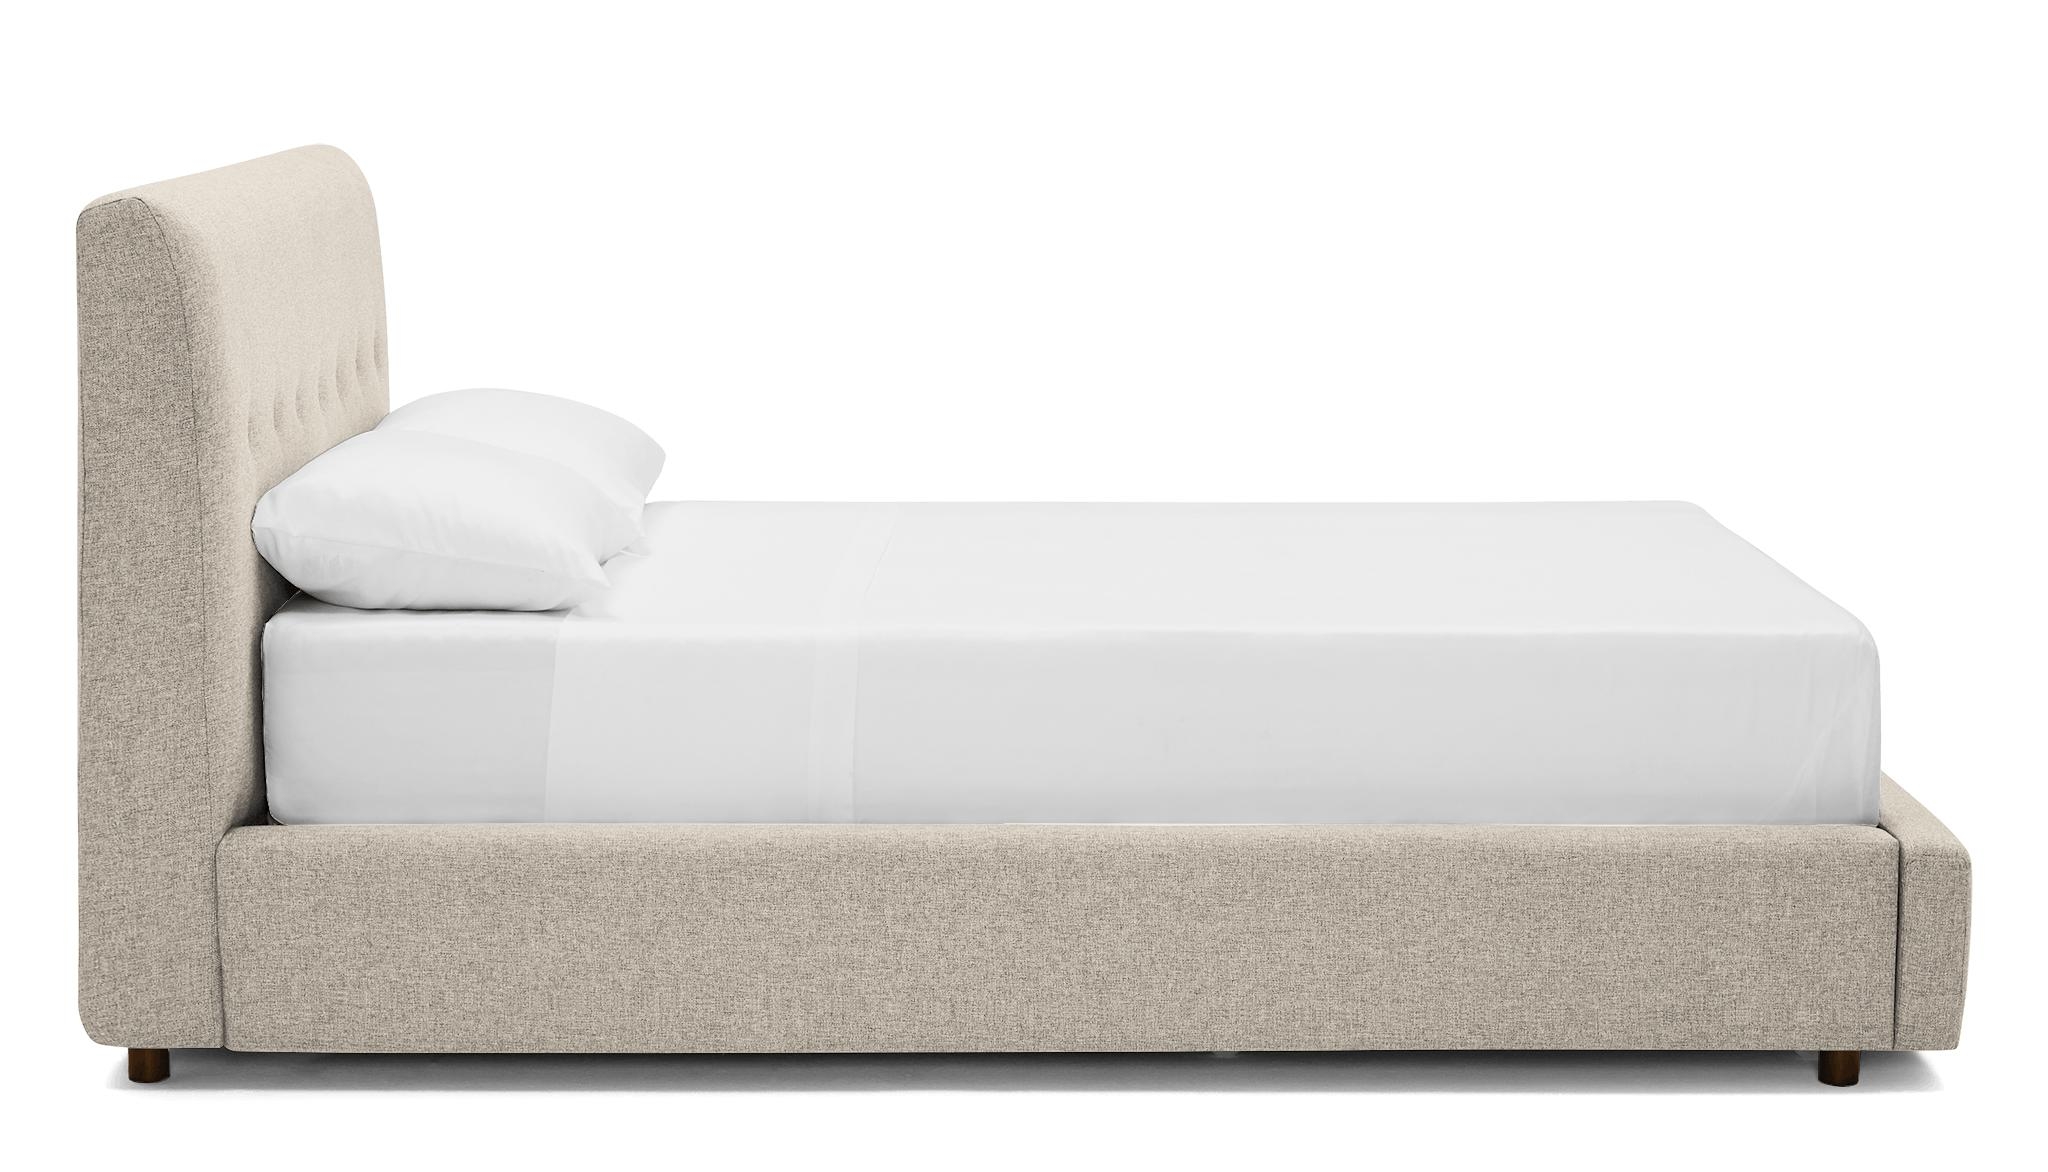 Beige/White Alvin Mid Century Modern Storage Bed - Cody Sandstone - Mocha - Queen - Image 2